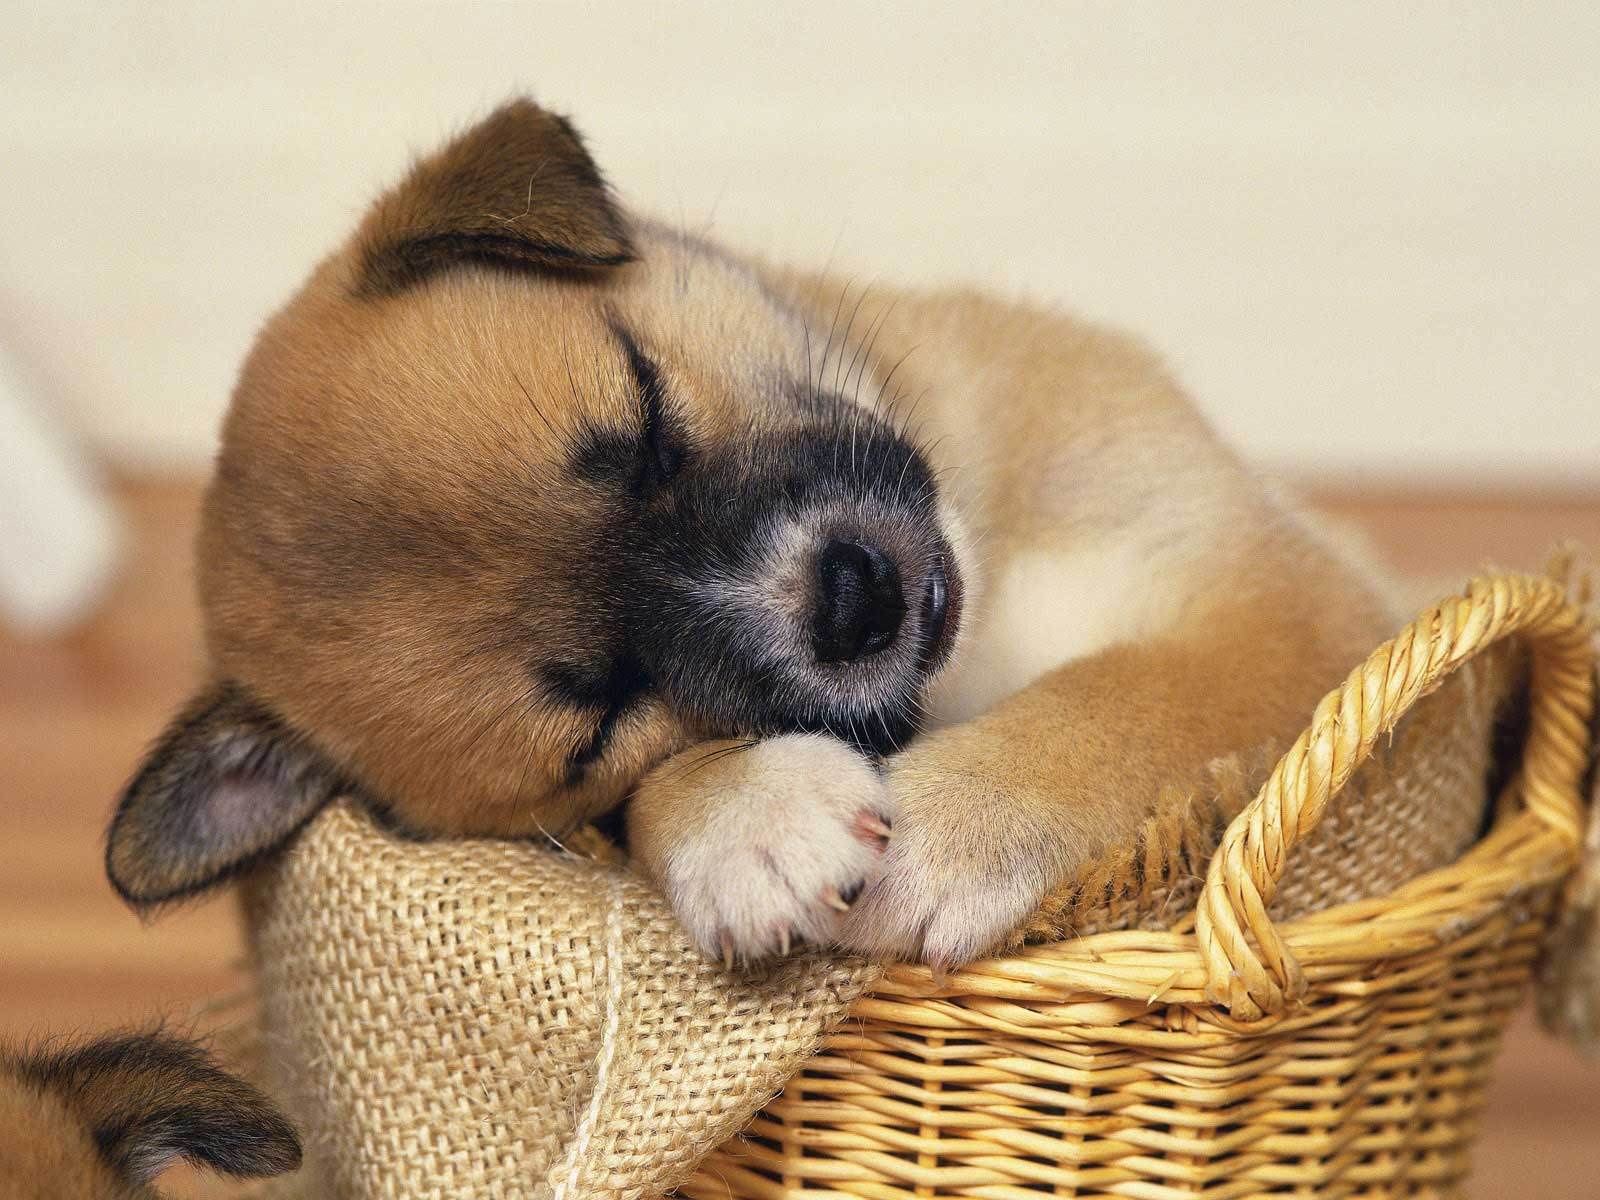 Puppy cute puppy sleeping in basket wallpaper desktop free ...